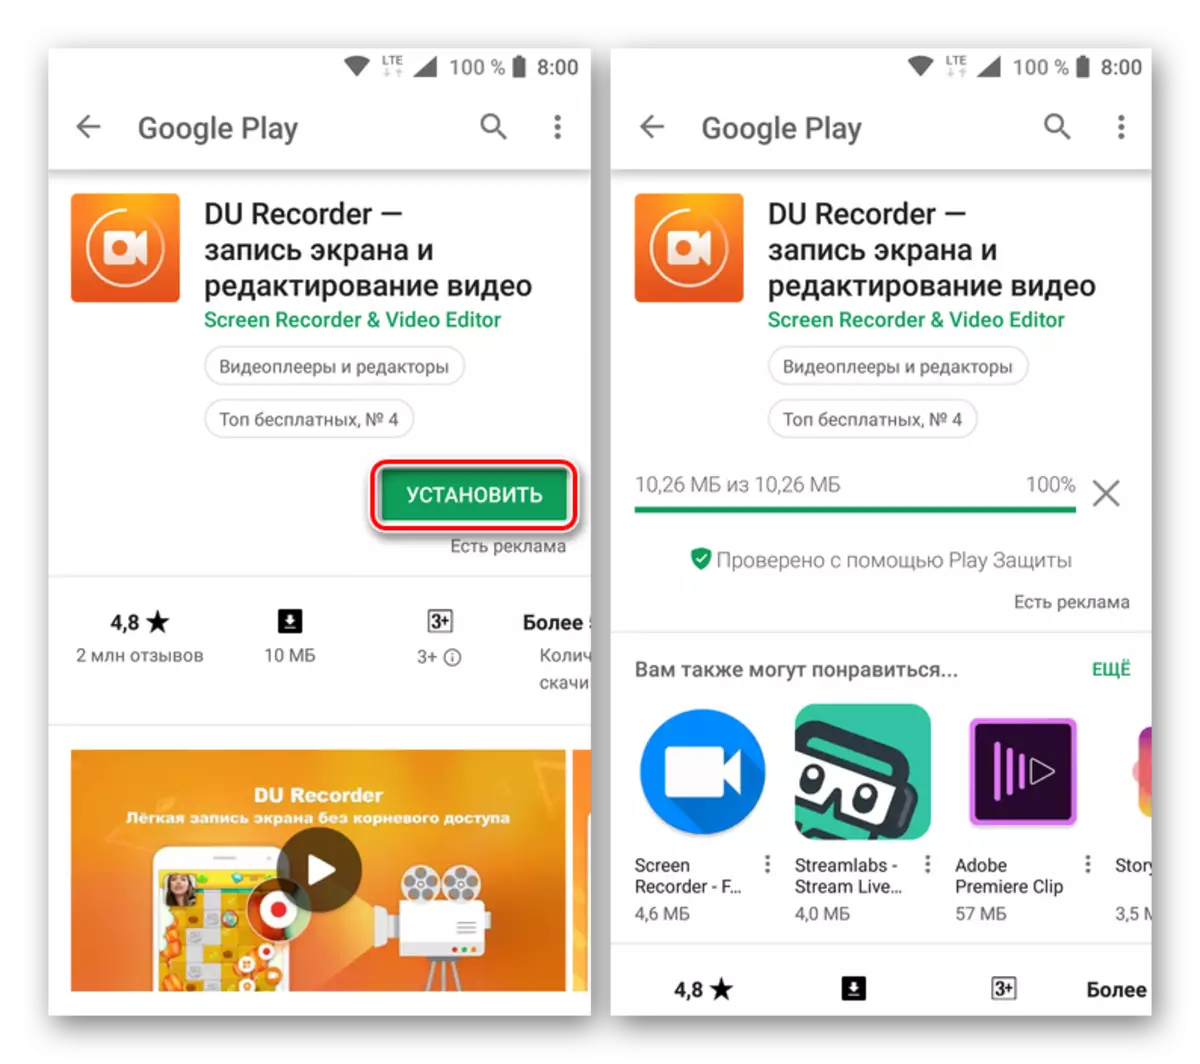 Nginstall aplikasi recorder Du kanggo Android saka Google Play Market